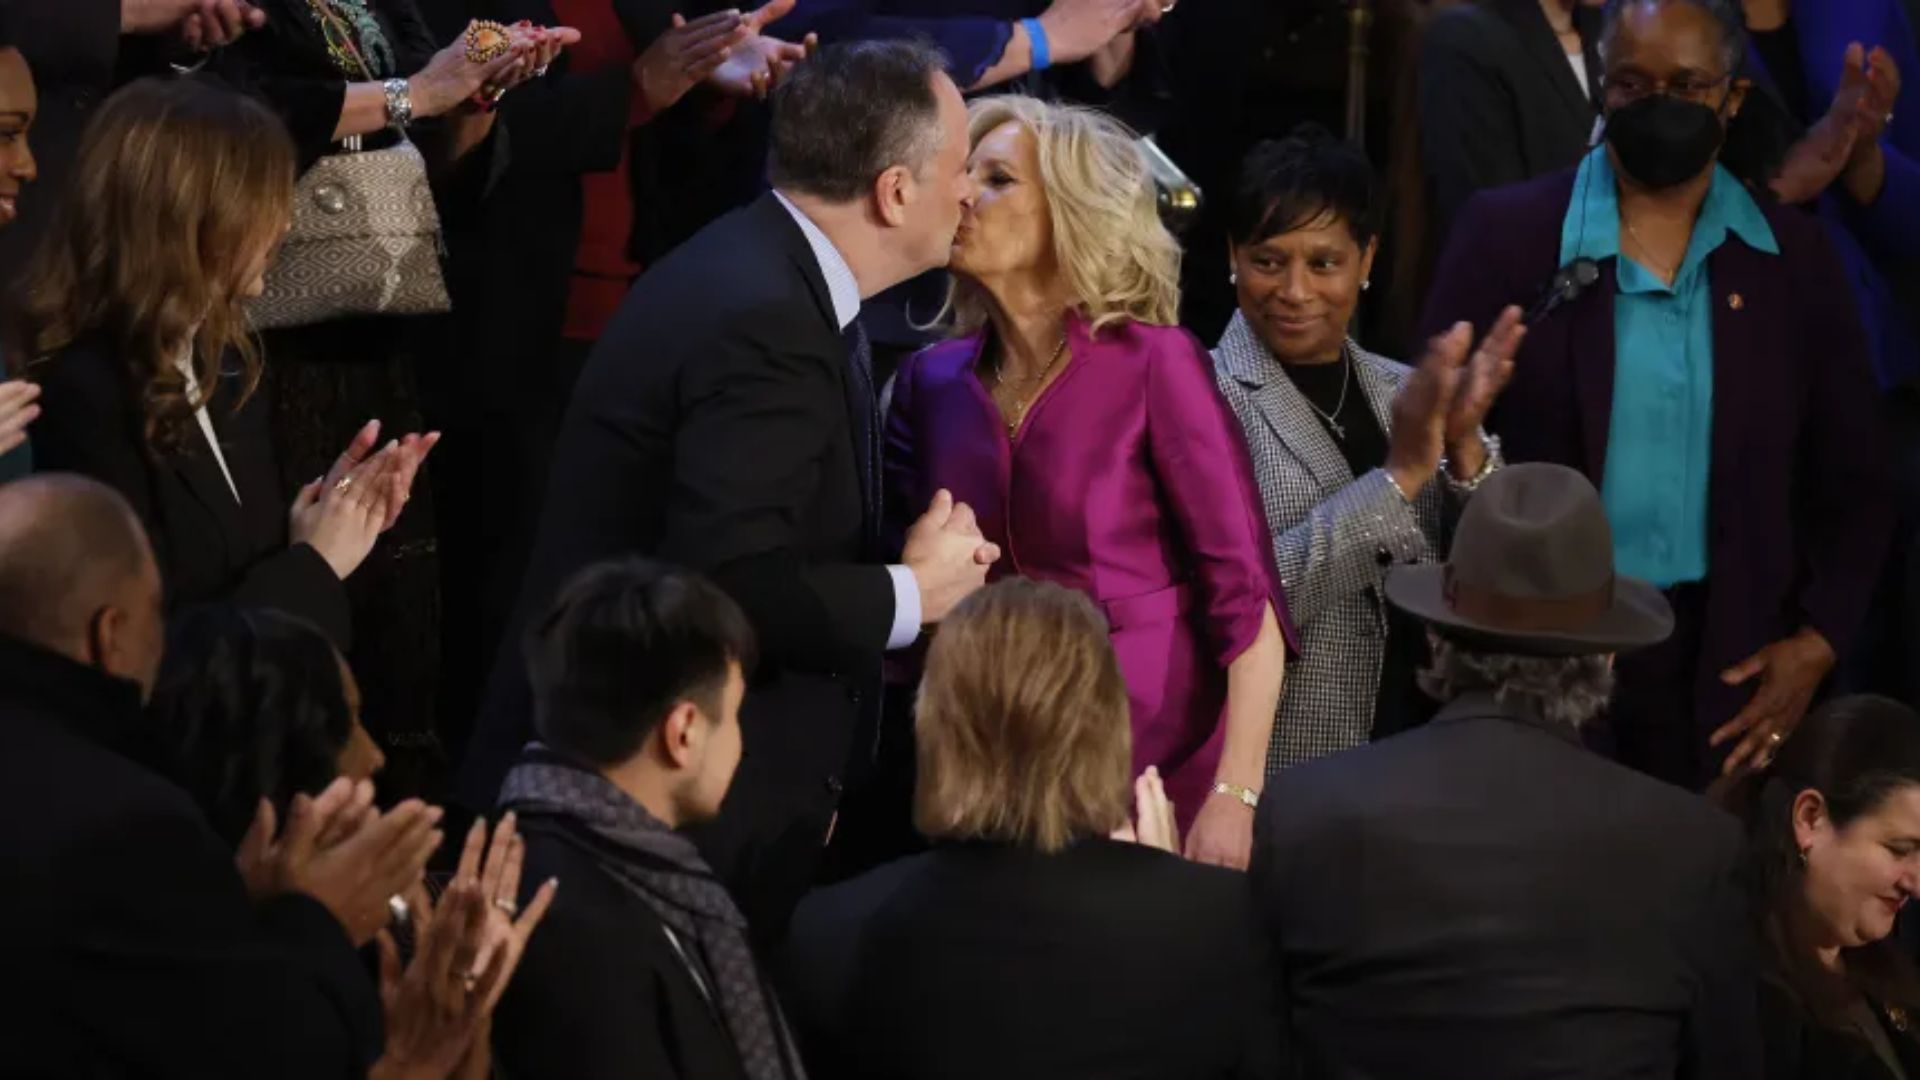 Beijo na boca foi transmitido durante chegada da primeira-dama - Foto: Reprodução/Twitter @eixopolitico